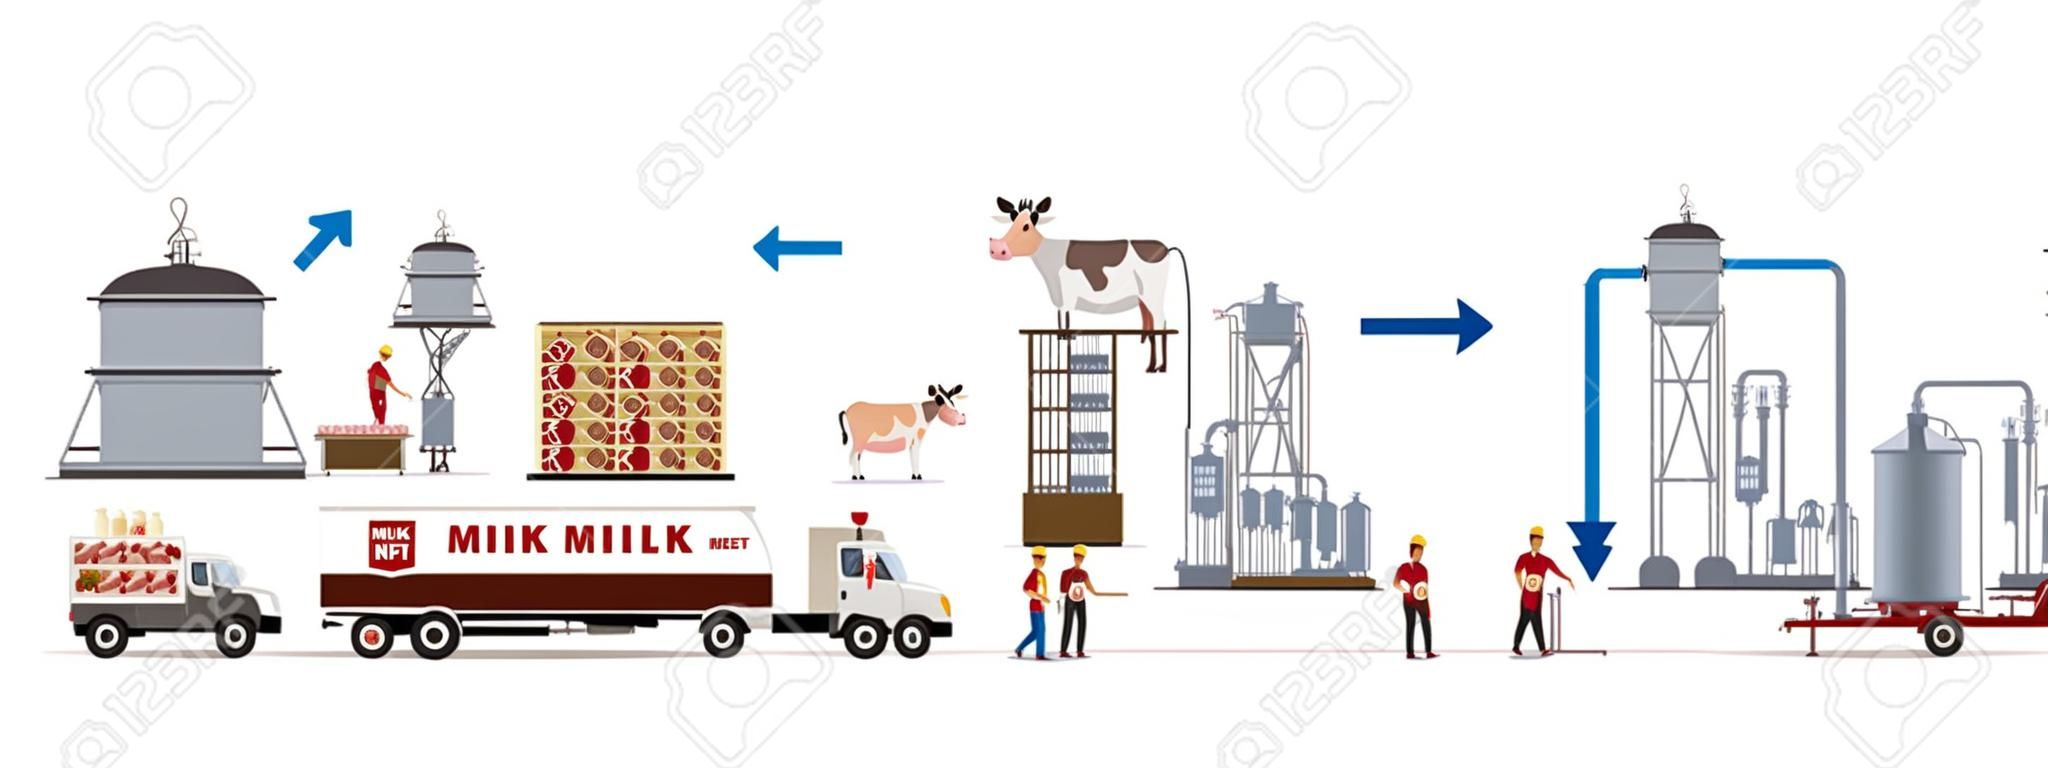 Молочно-мясной комбинат с автоматами и рабочими. Векторная иллюстрация.